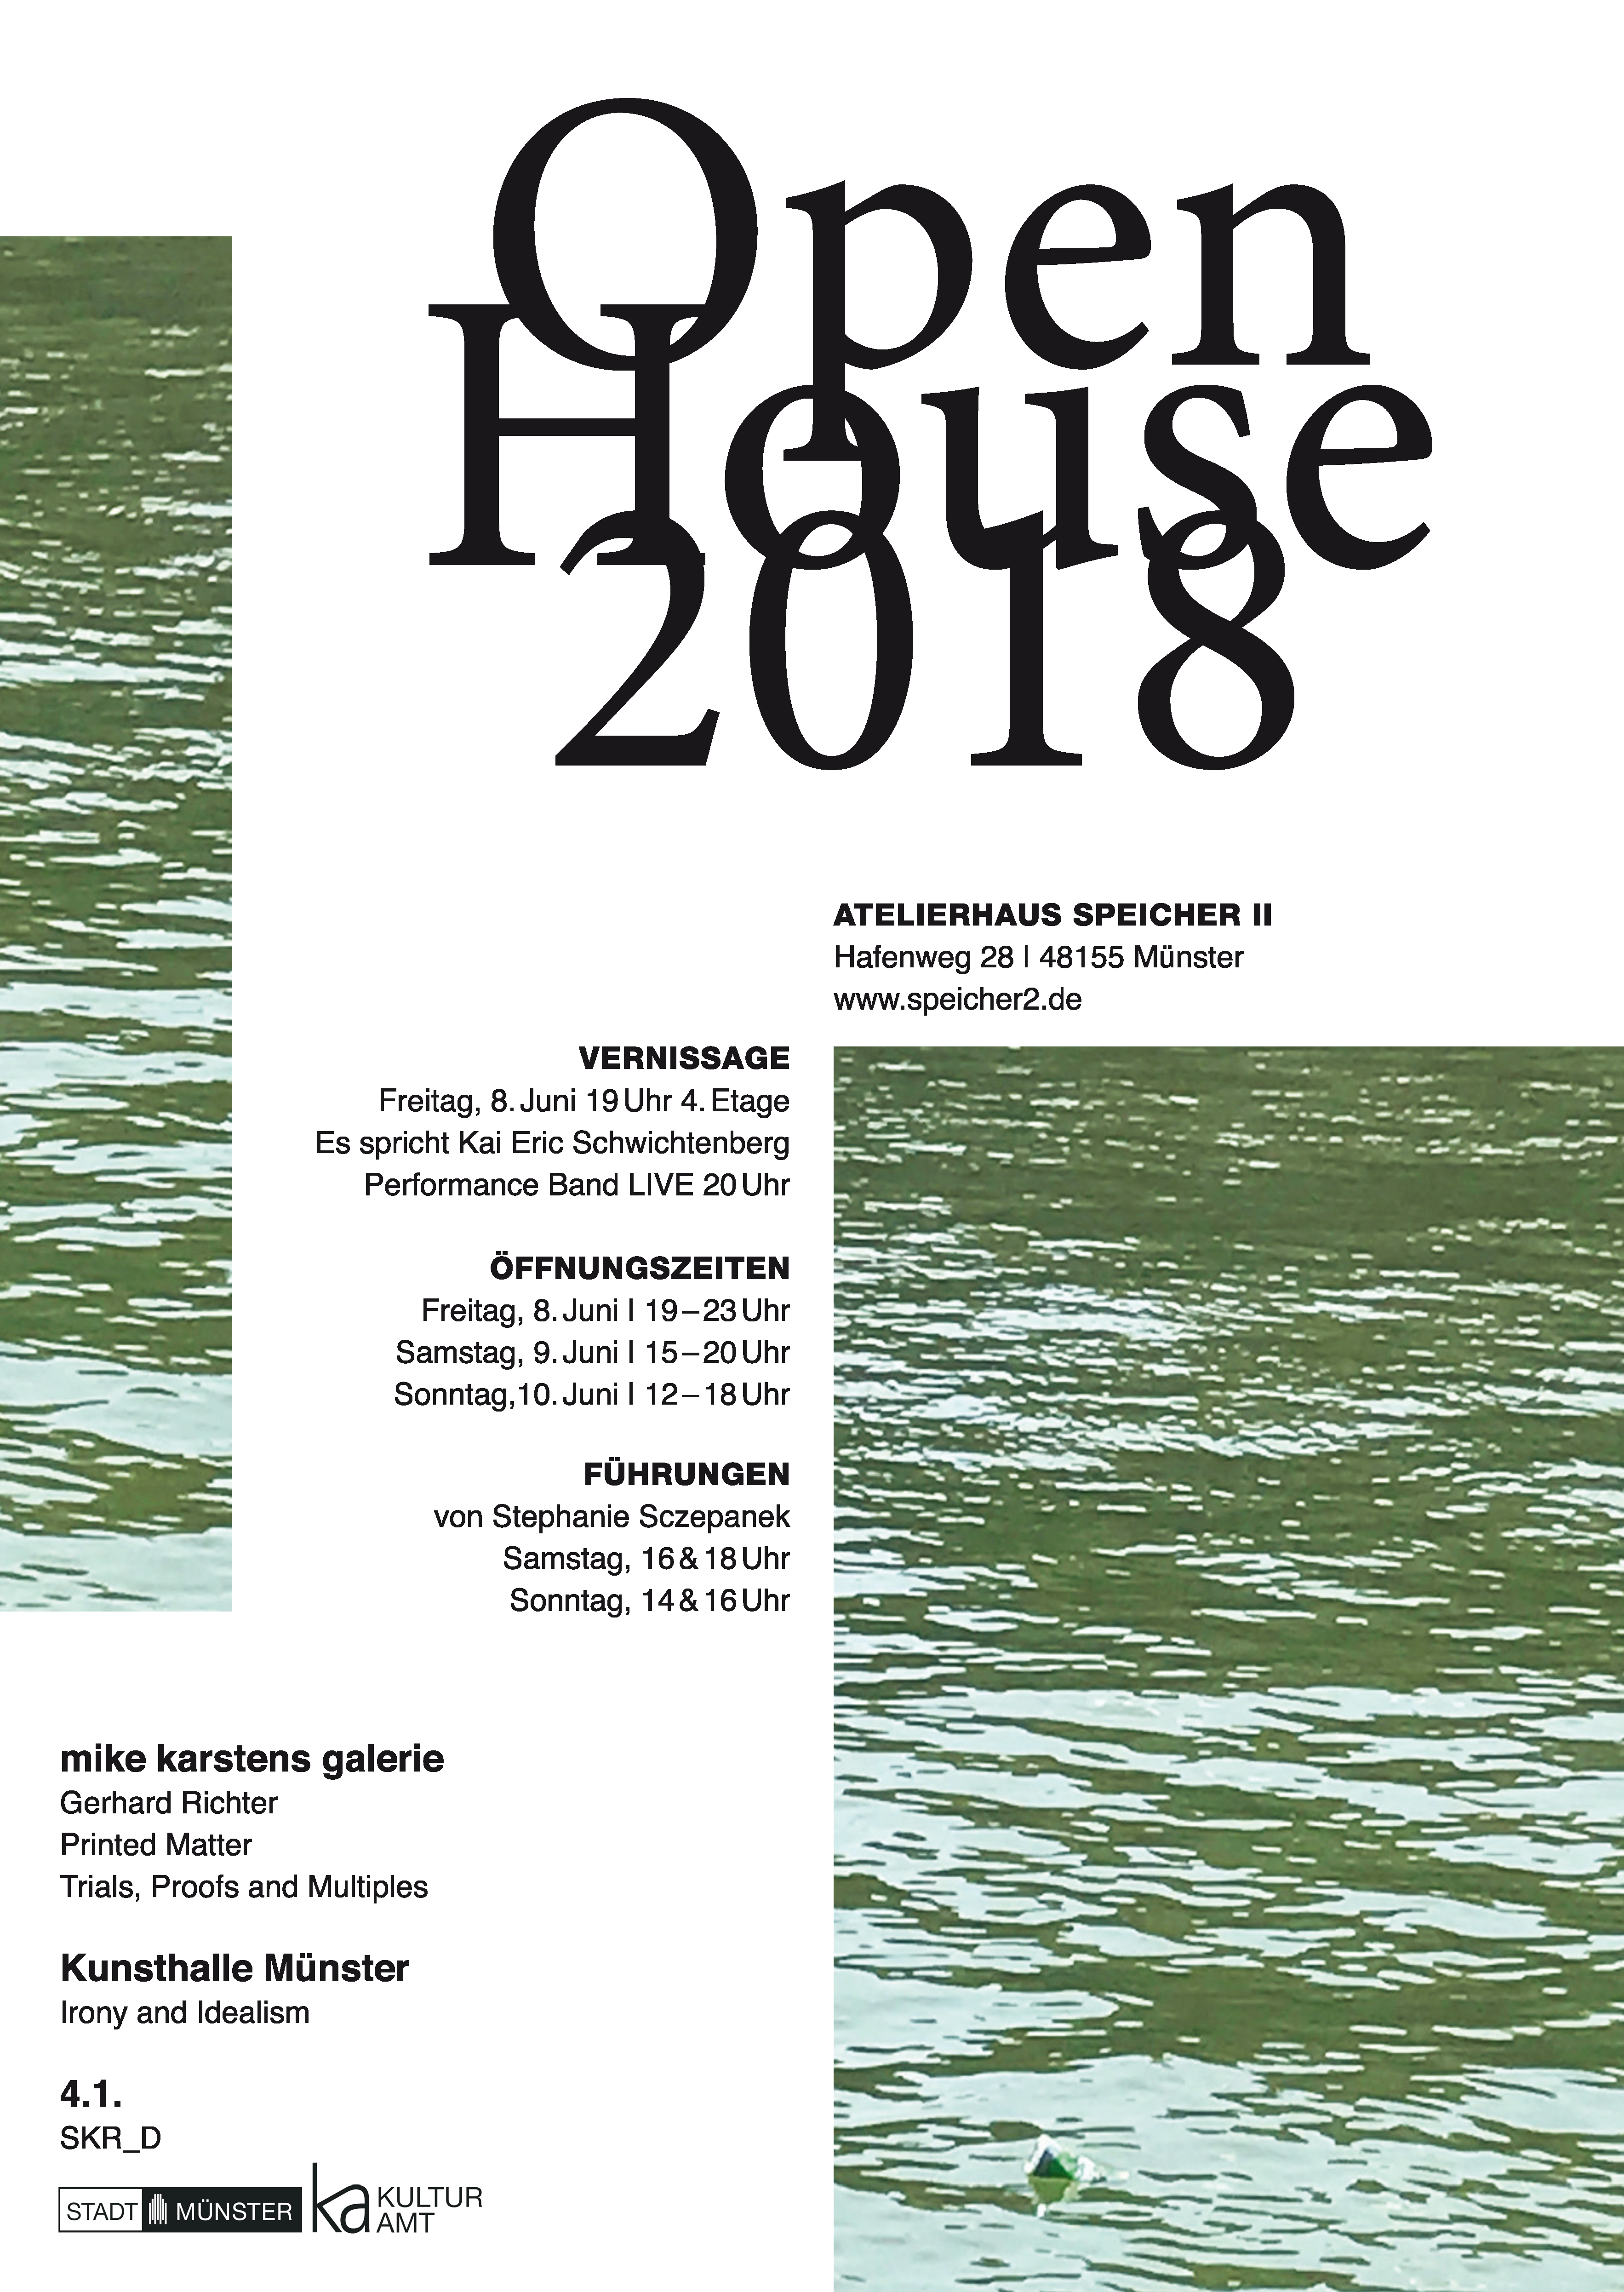 plakat open house 2018